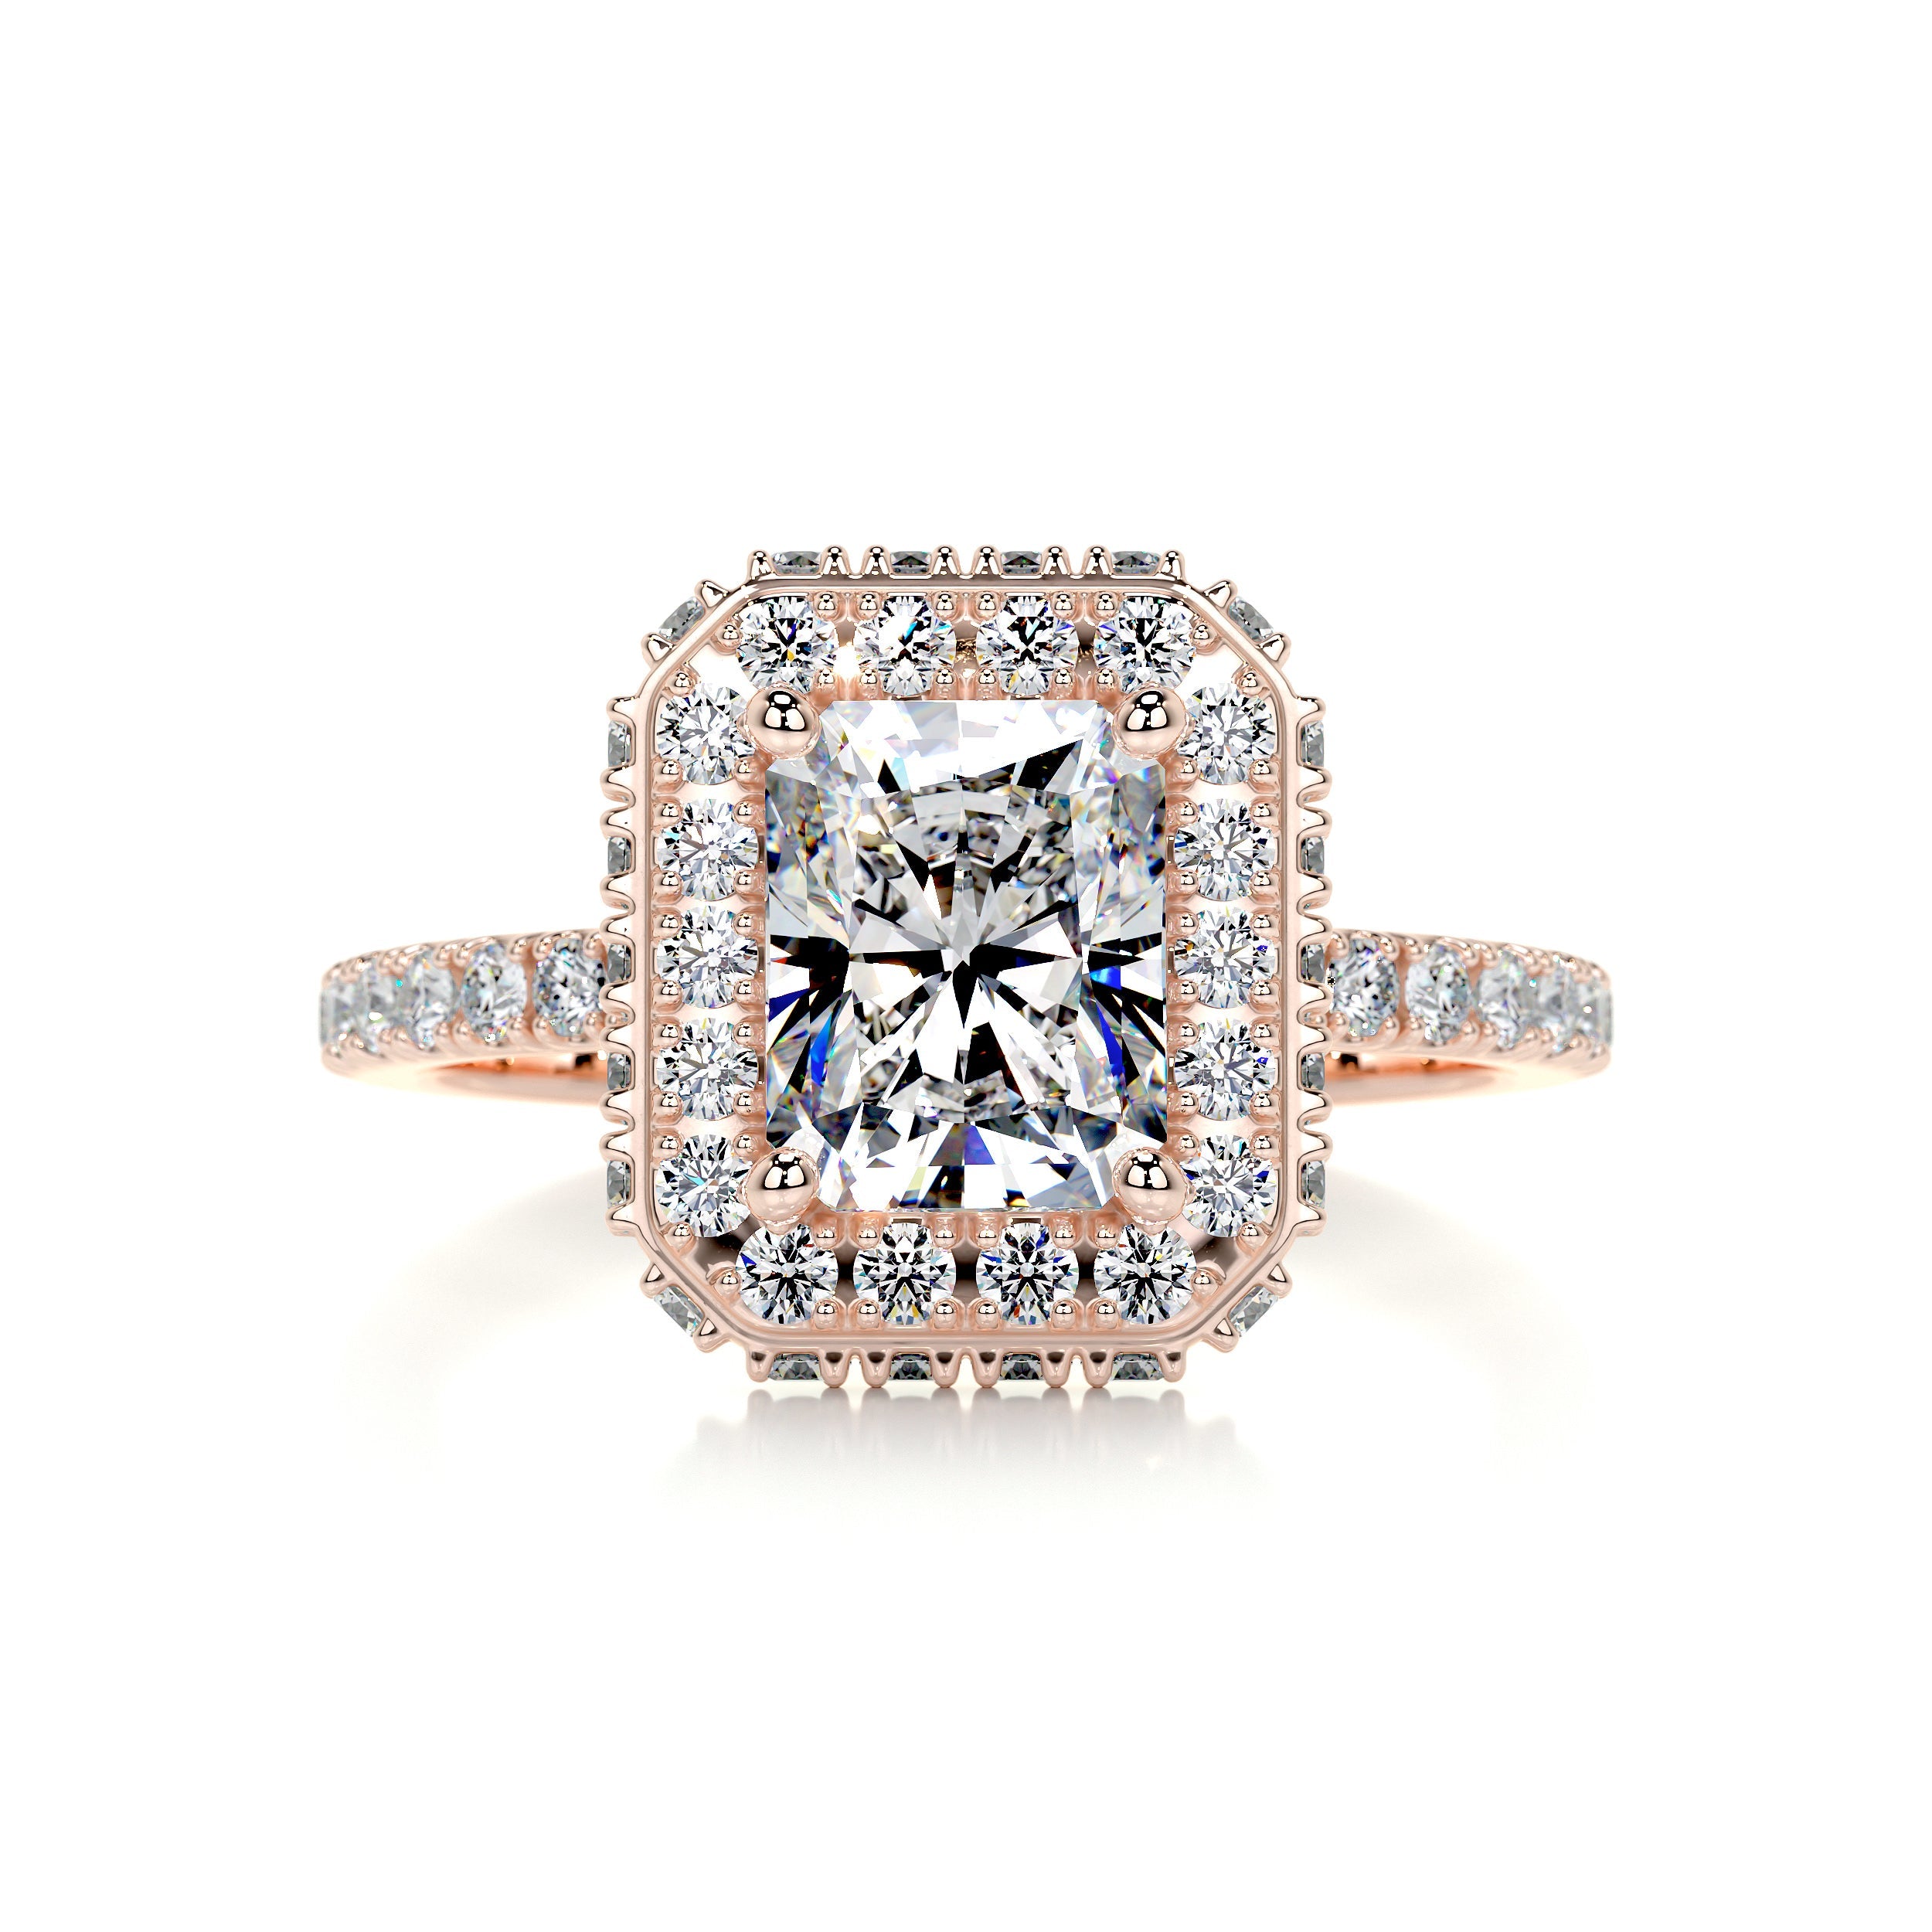 Lana Moissanite & Diamonds Ring   (2.5 Carat) -14K Rose Gold